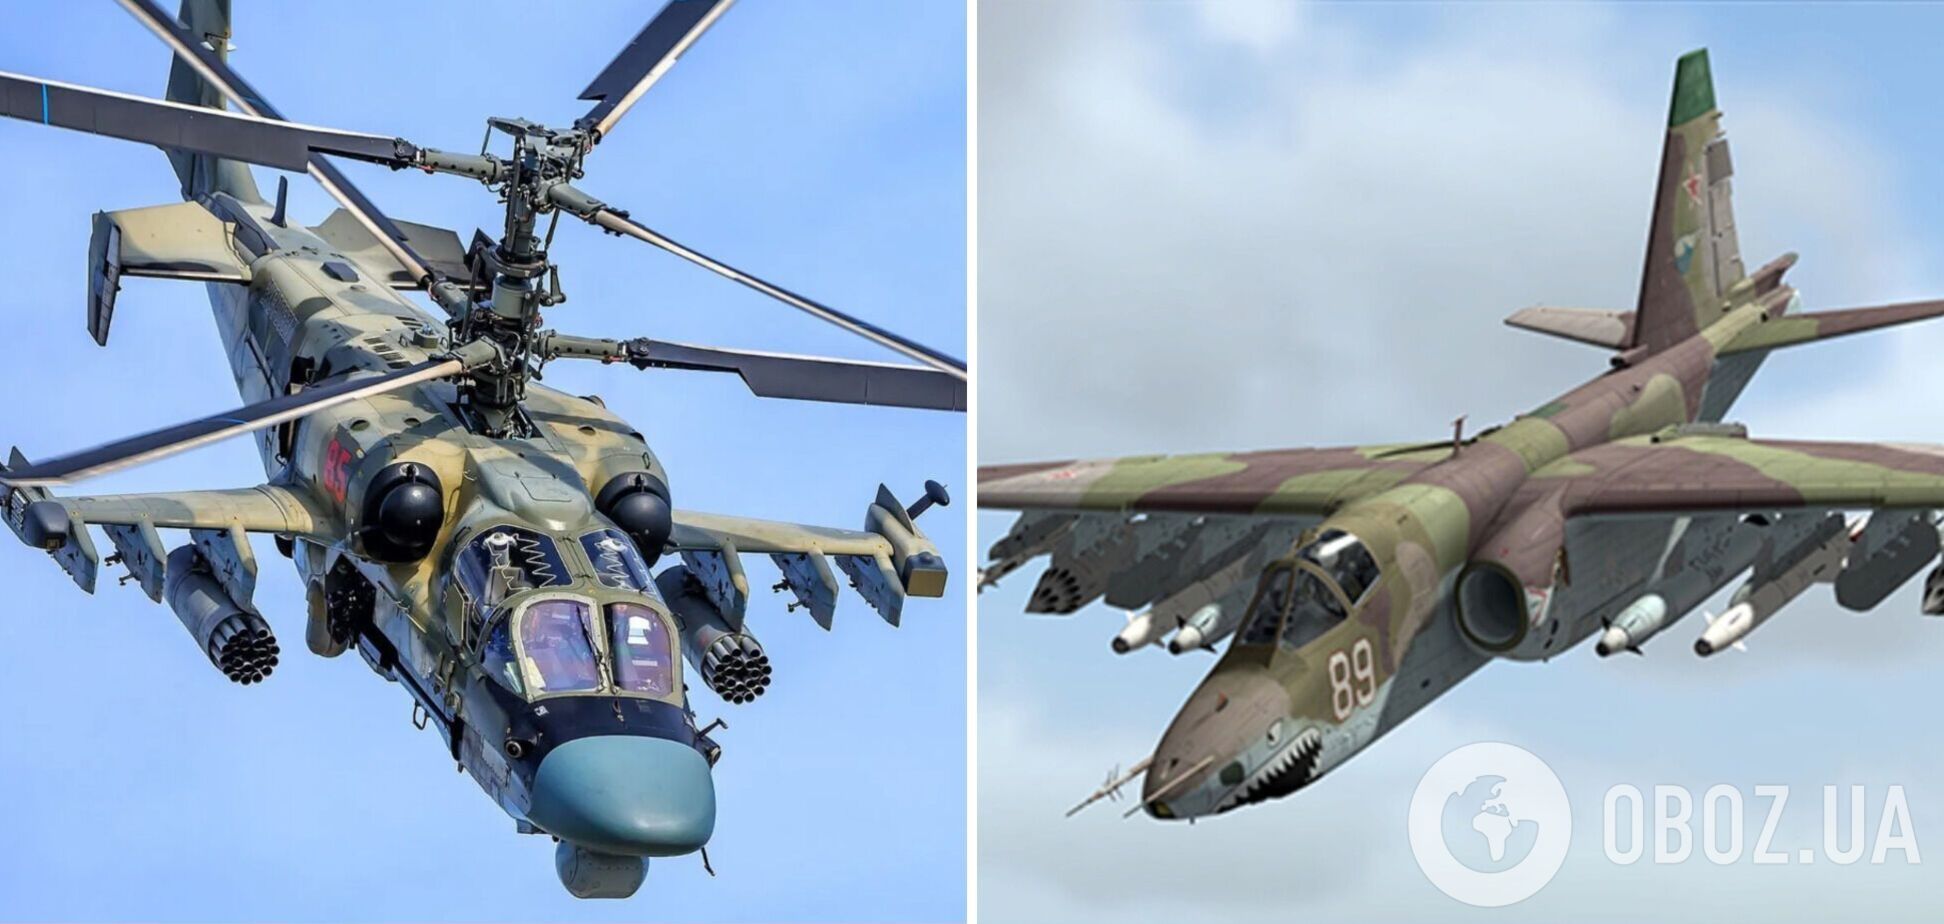 В Херсонской области украинские защитники утром сбили вражеский вертолет Ка-52 и штурмовик Су-25